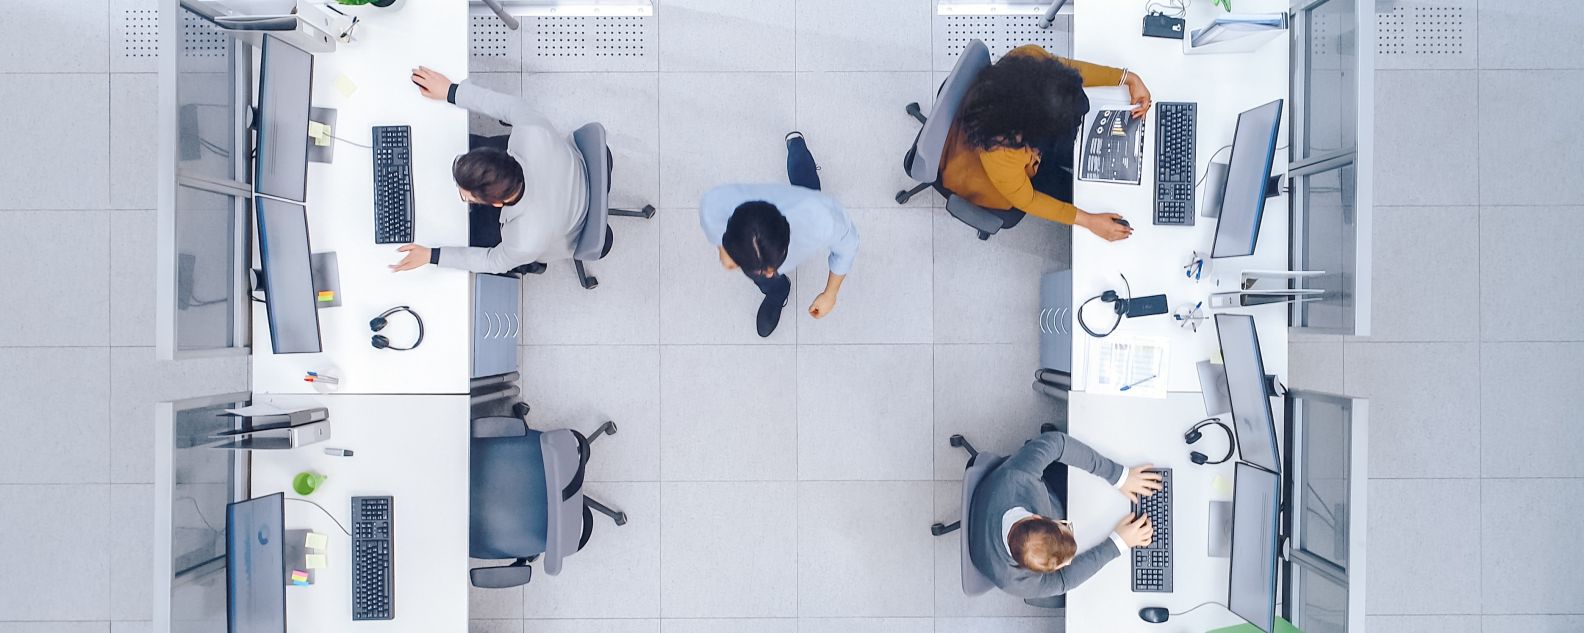 vue aérienne de personnes travaillant dans un bureau